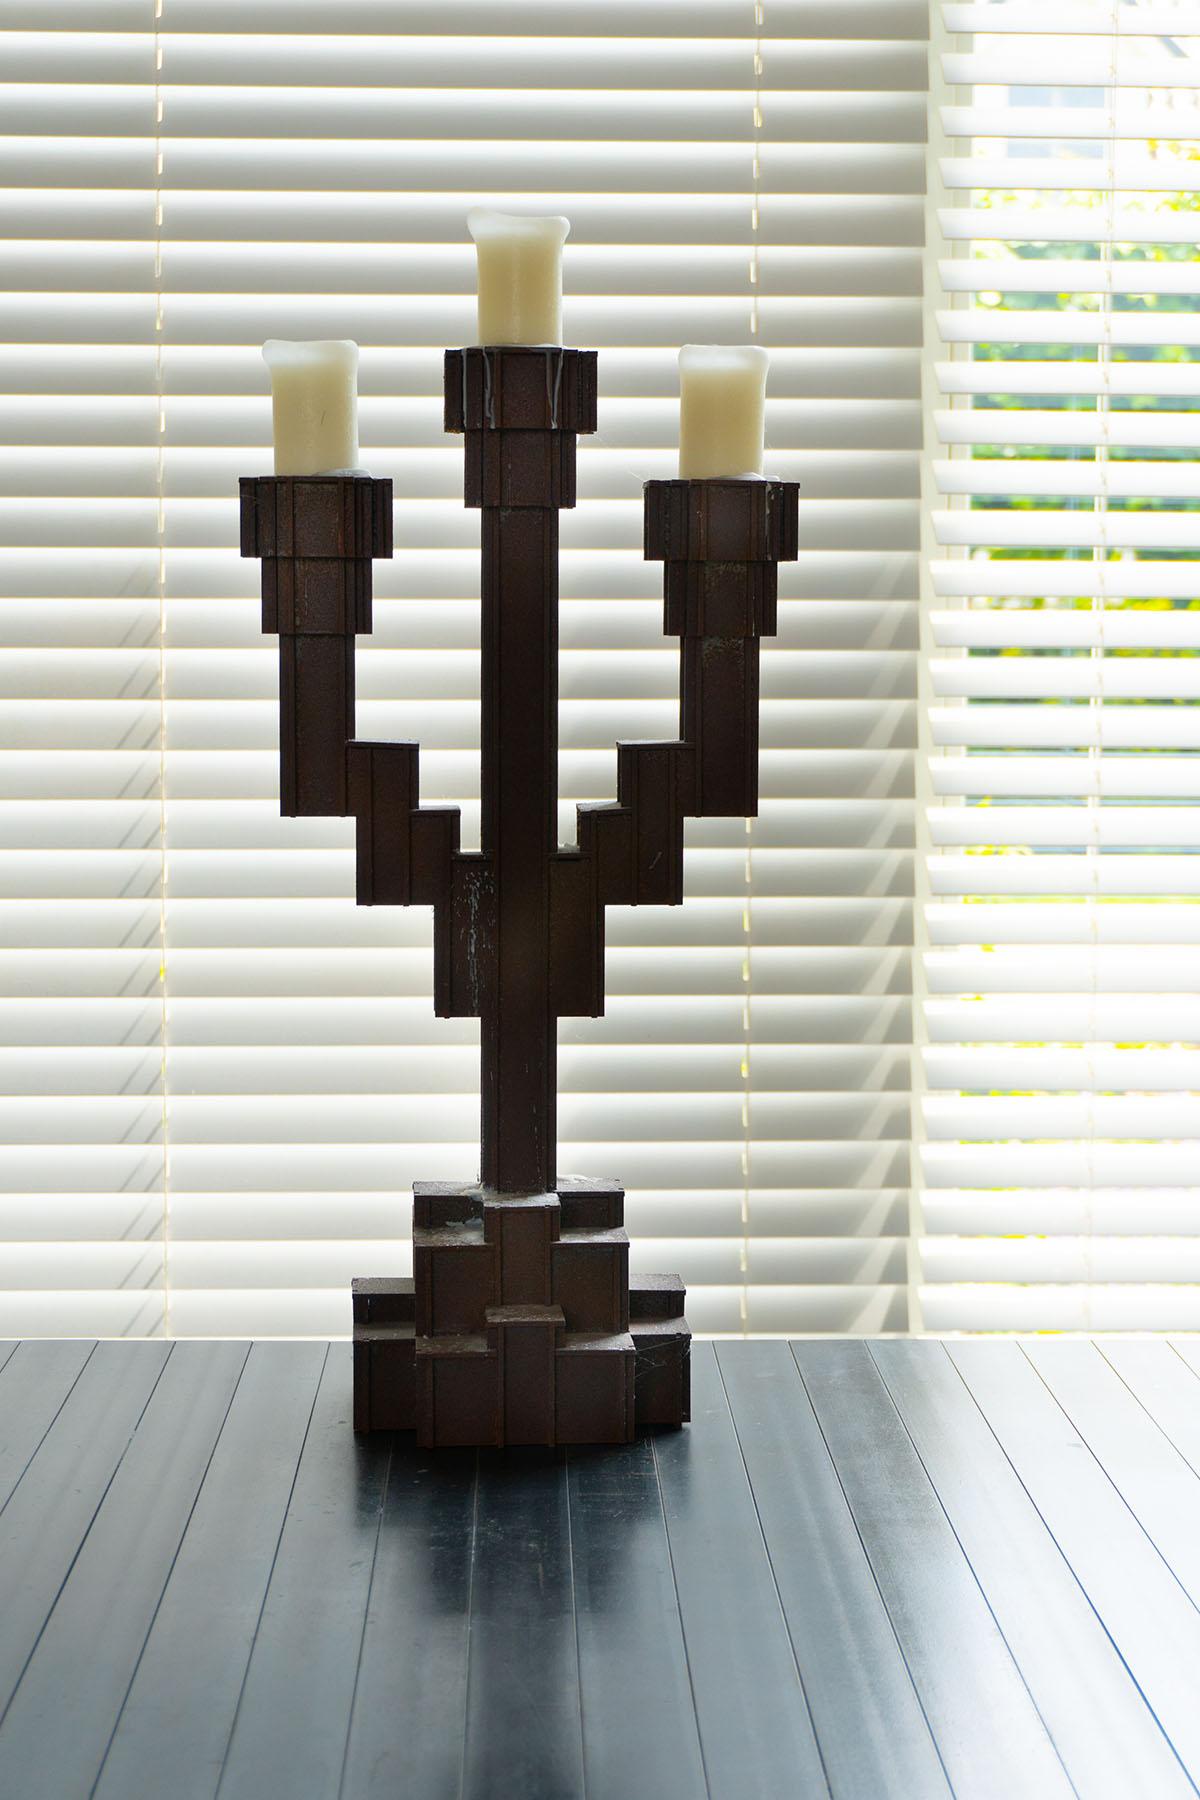 No Screw No Glue ist eine ikonische Reihe von Möbeln und Objekten, die von Joost Van Bleiswijk entworfen wurden. Die Komponenten werden mit dem Laser geschnitten und durch Zusammenstecken zusammengefügt. Wie der Name schon sagt, benötigen diese